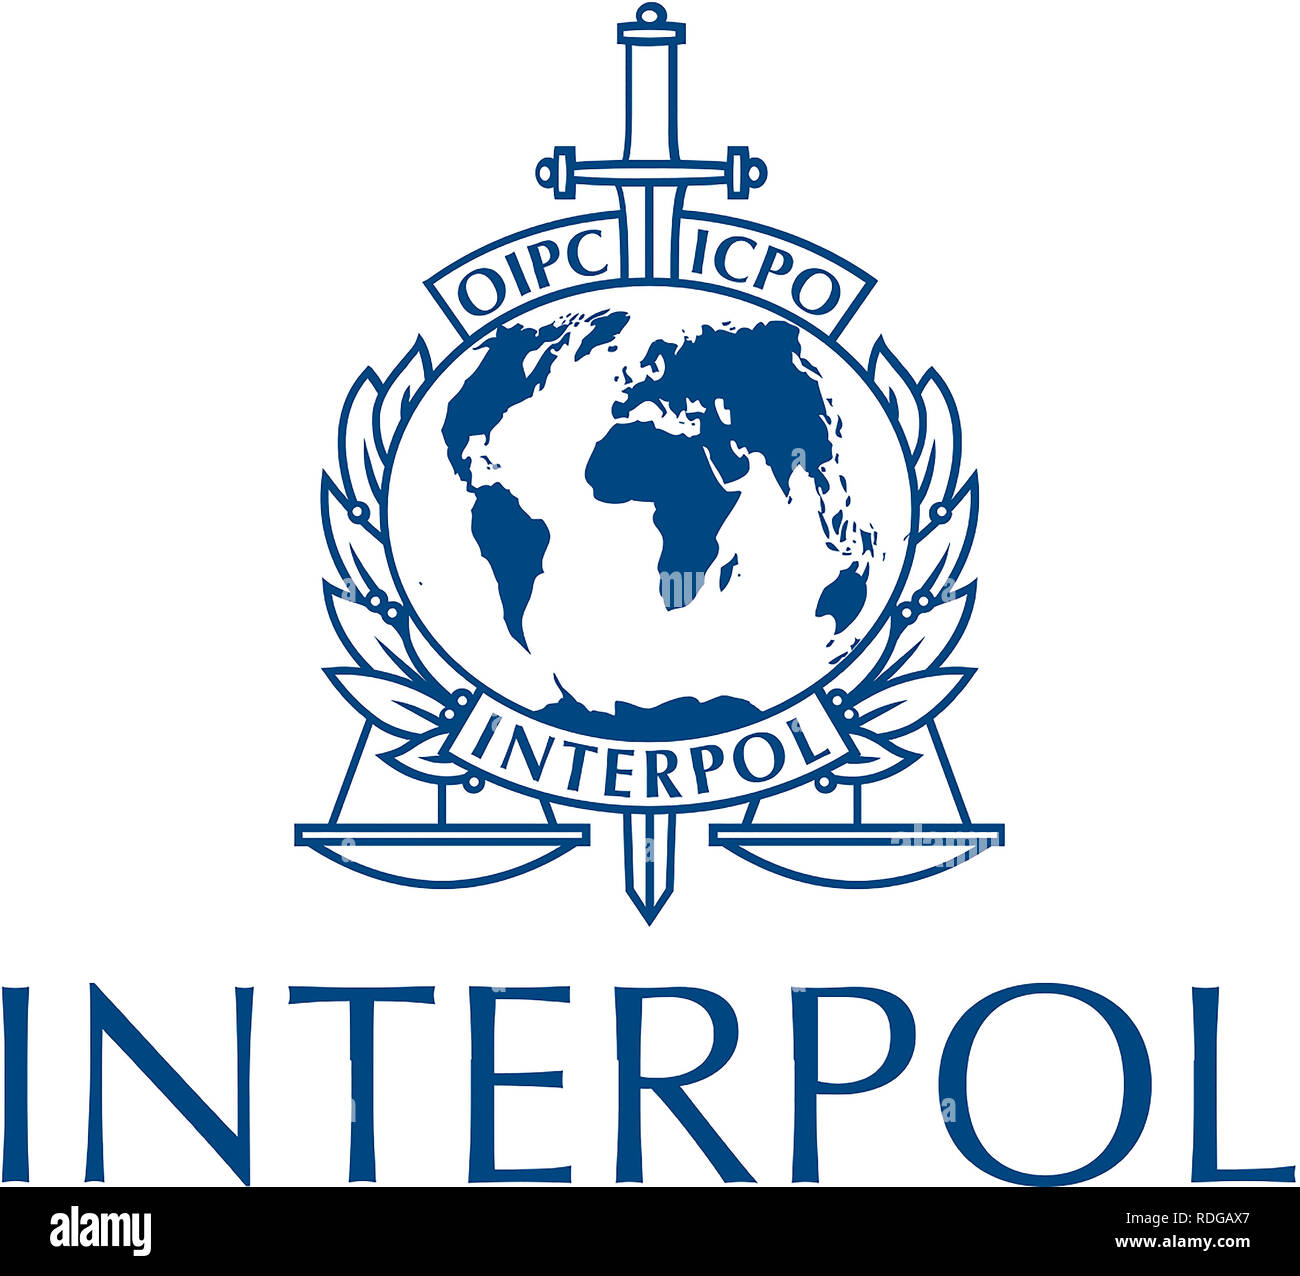 Logo de l'Organisation internationale de police criminelle Interpol avec joint à Lyon - France. Banque D'Images